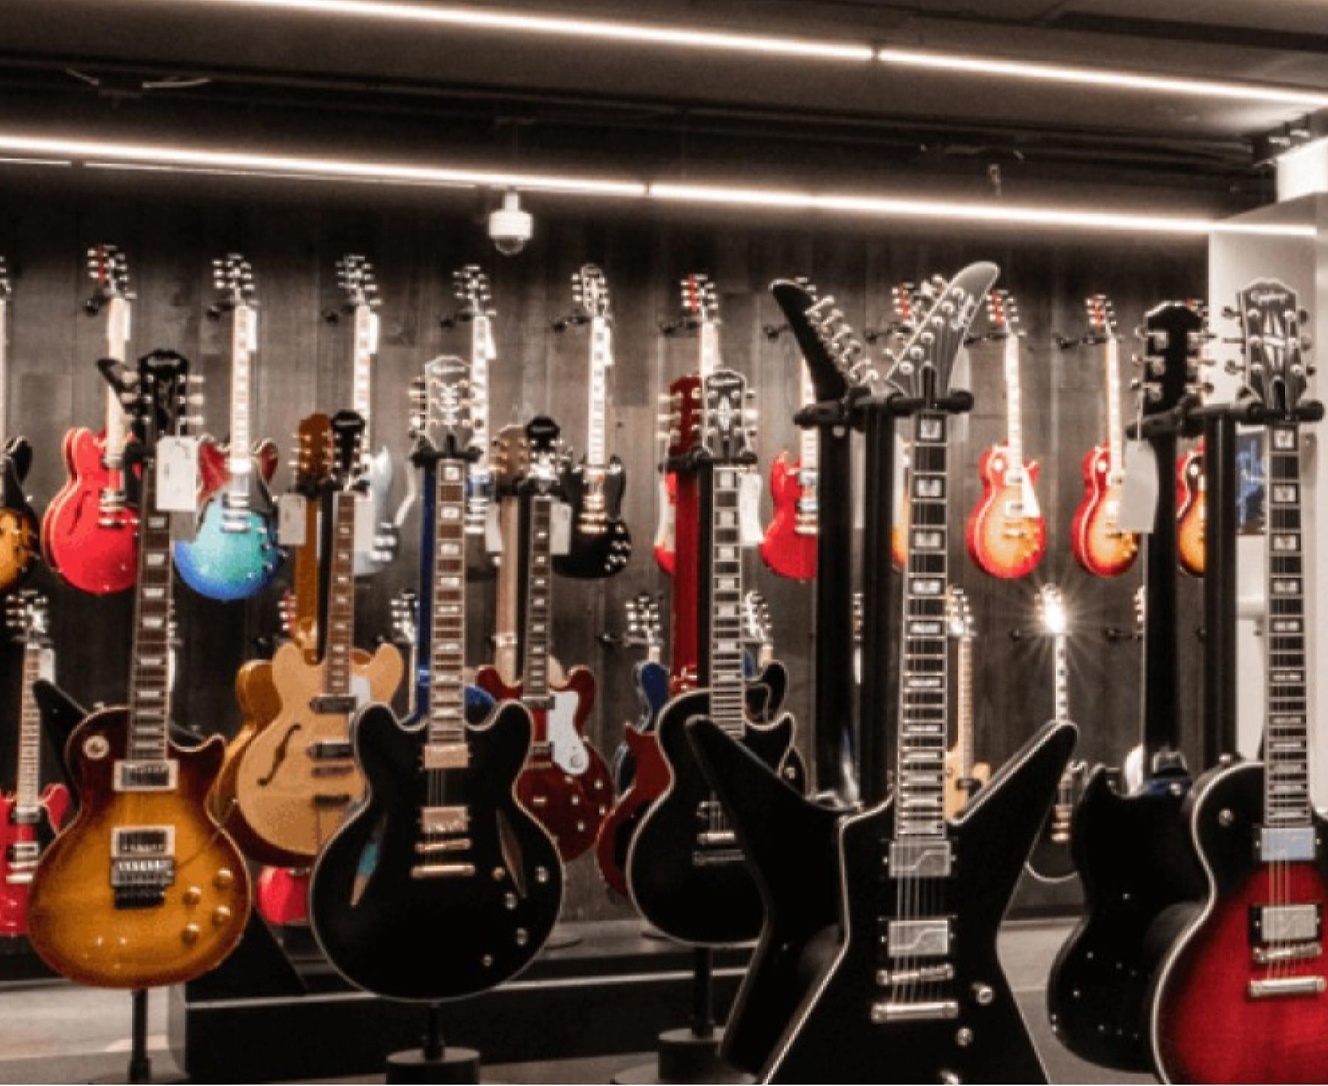 Hay muchas guitarras expuestas en una tienda.